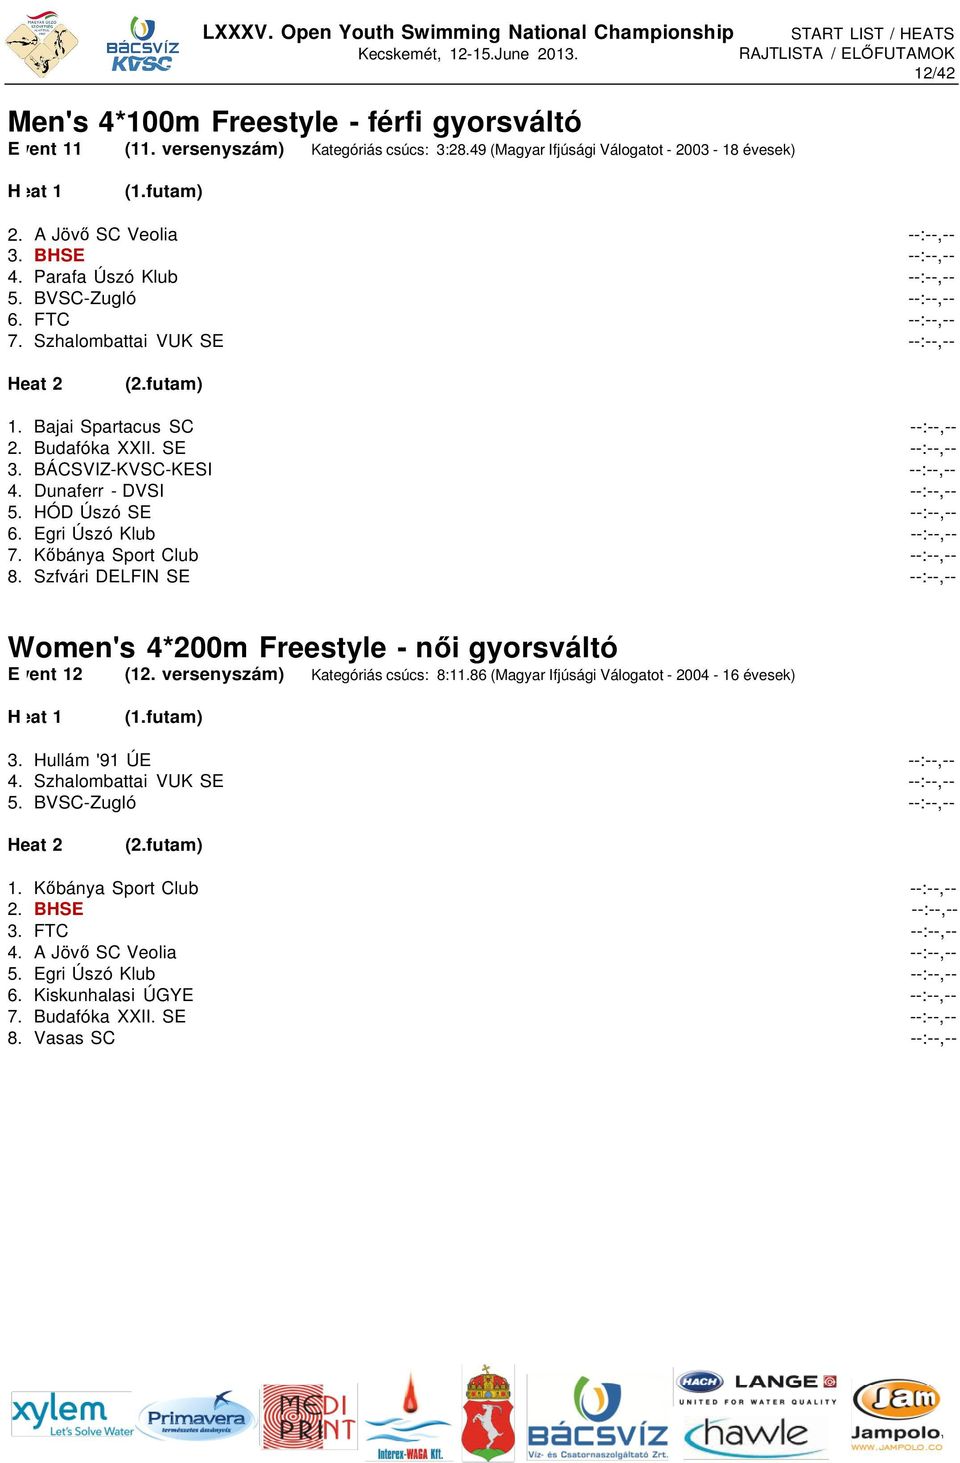 Kőbánya Sport Club 8. Szfvári DELFIN SE Women's 4*200m Freestyle - női gyorsváltó E vent 12 (12. versenyszám) Kategóriás csúcs: 8:11.